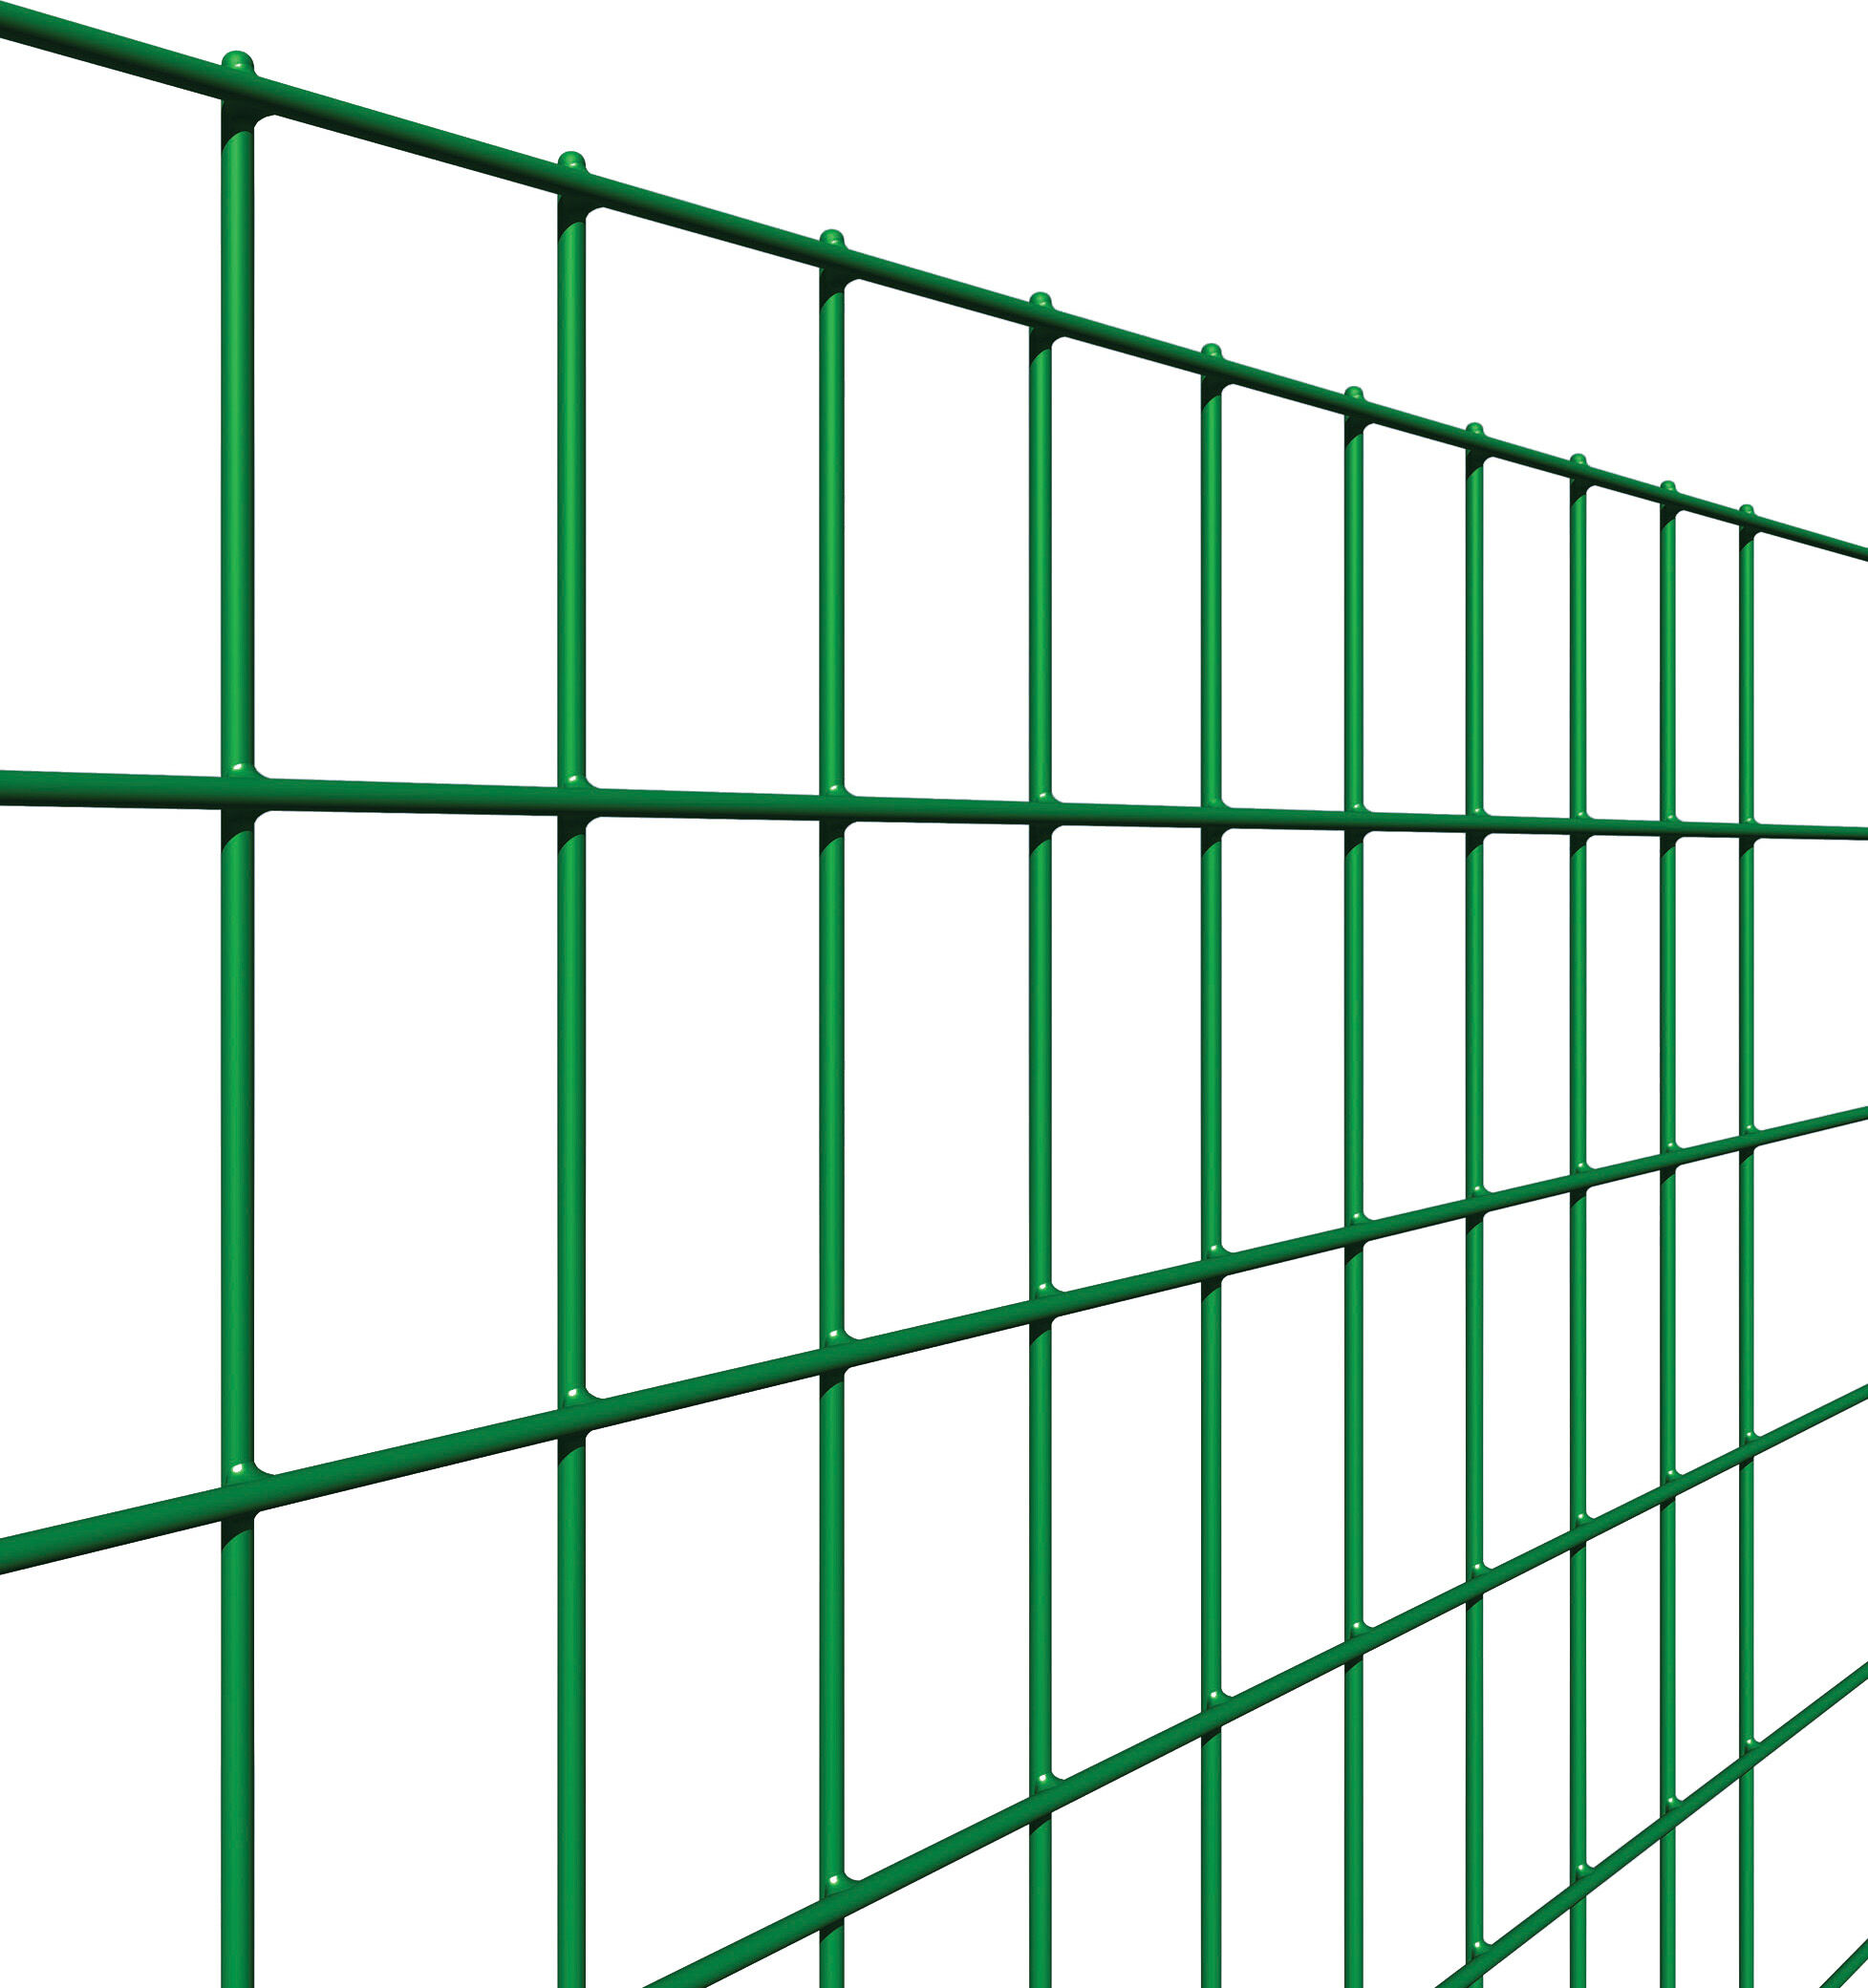 reti sud 121 rete per recinzione filo zincato e plastificato elettrosaldata maglie 50x75 mm h 120 cm rotolo 25 mt colore verde - 121 square plax